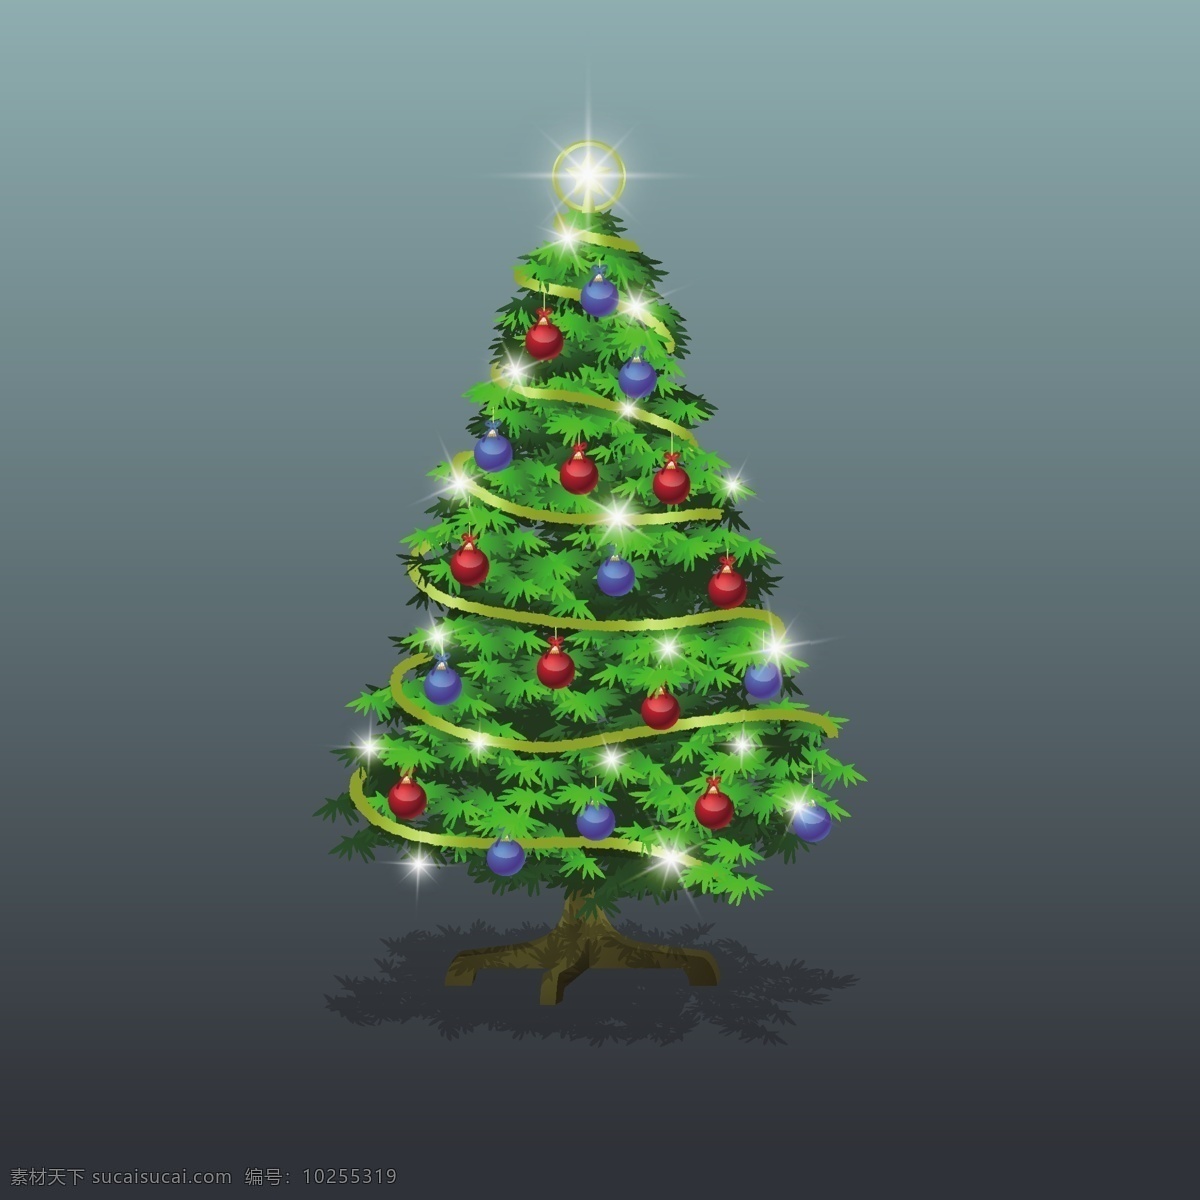 圣诞树图片 圣诞节 圣诞雪人 雪人 圣诞节元素 圣诞节气氛 感恩节 冬季 冬天 圣诞树 松树 圣诞树彩灯 夜光led 文化艺术 节日庆祝